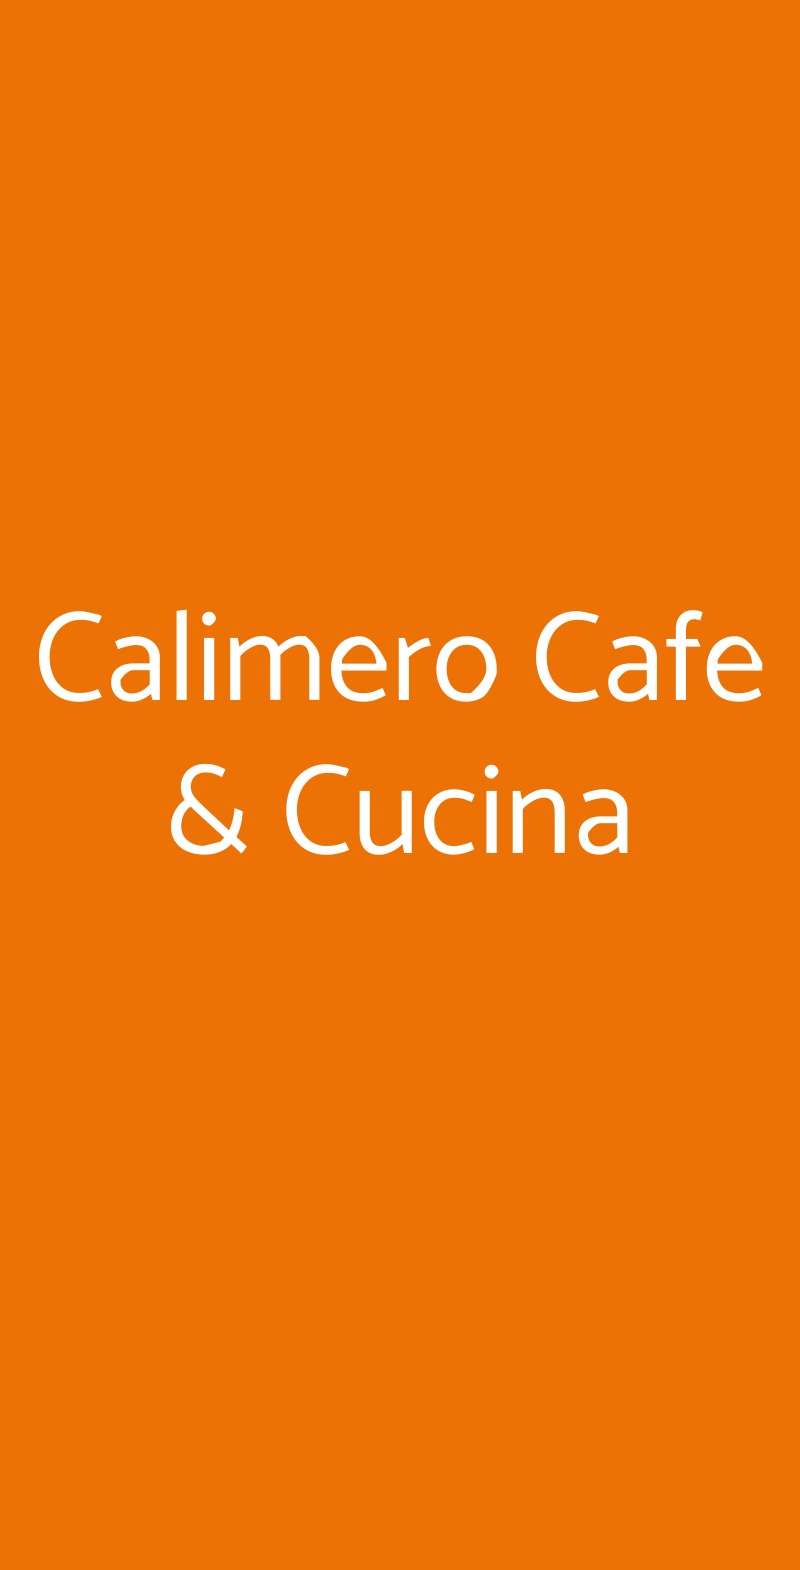 Calimero Cafe & Cucina Milano menù 1 pagina